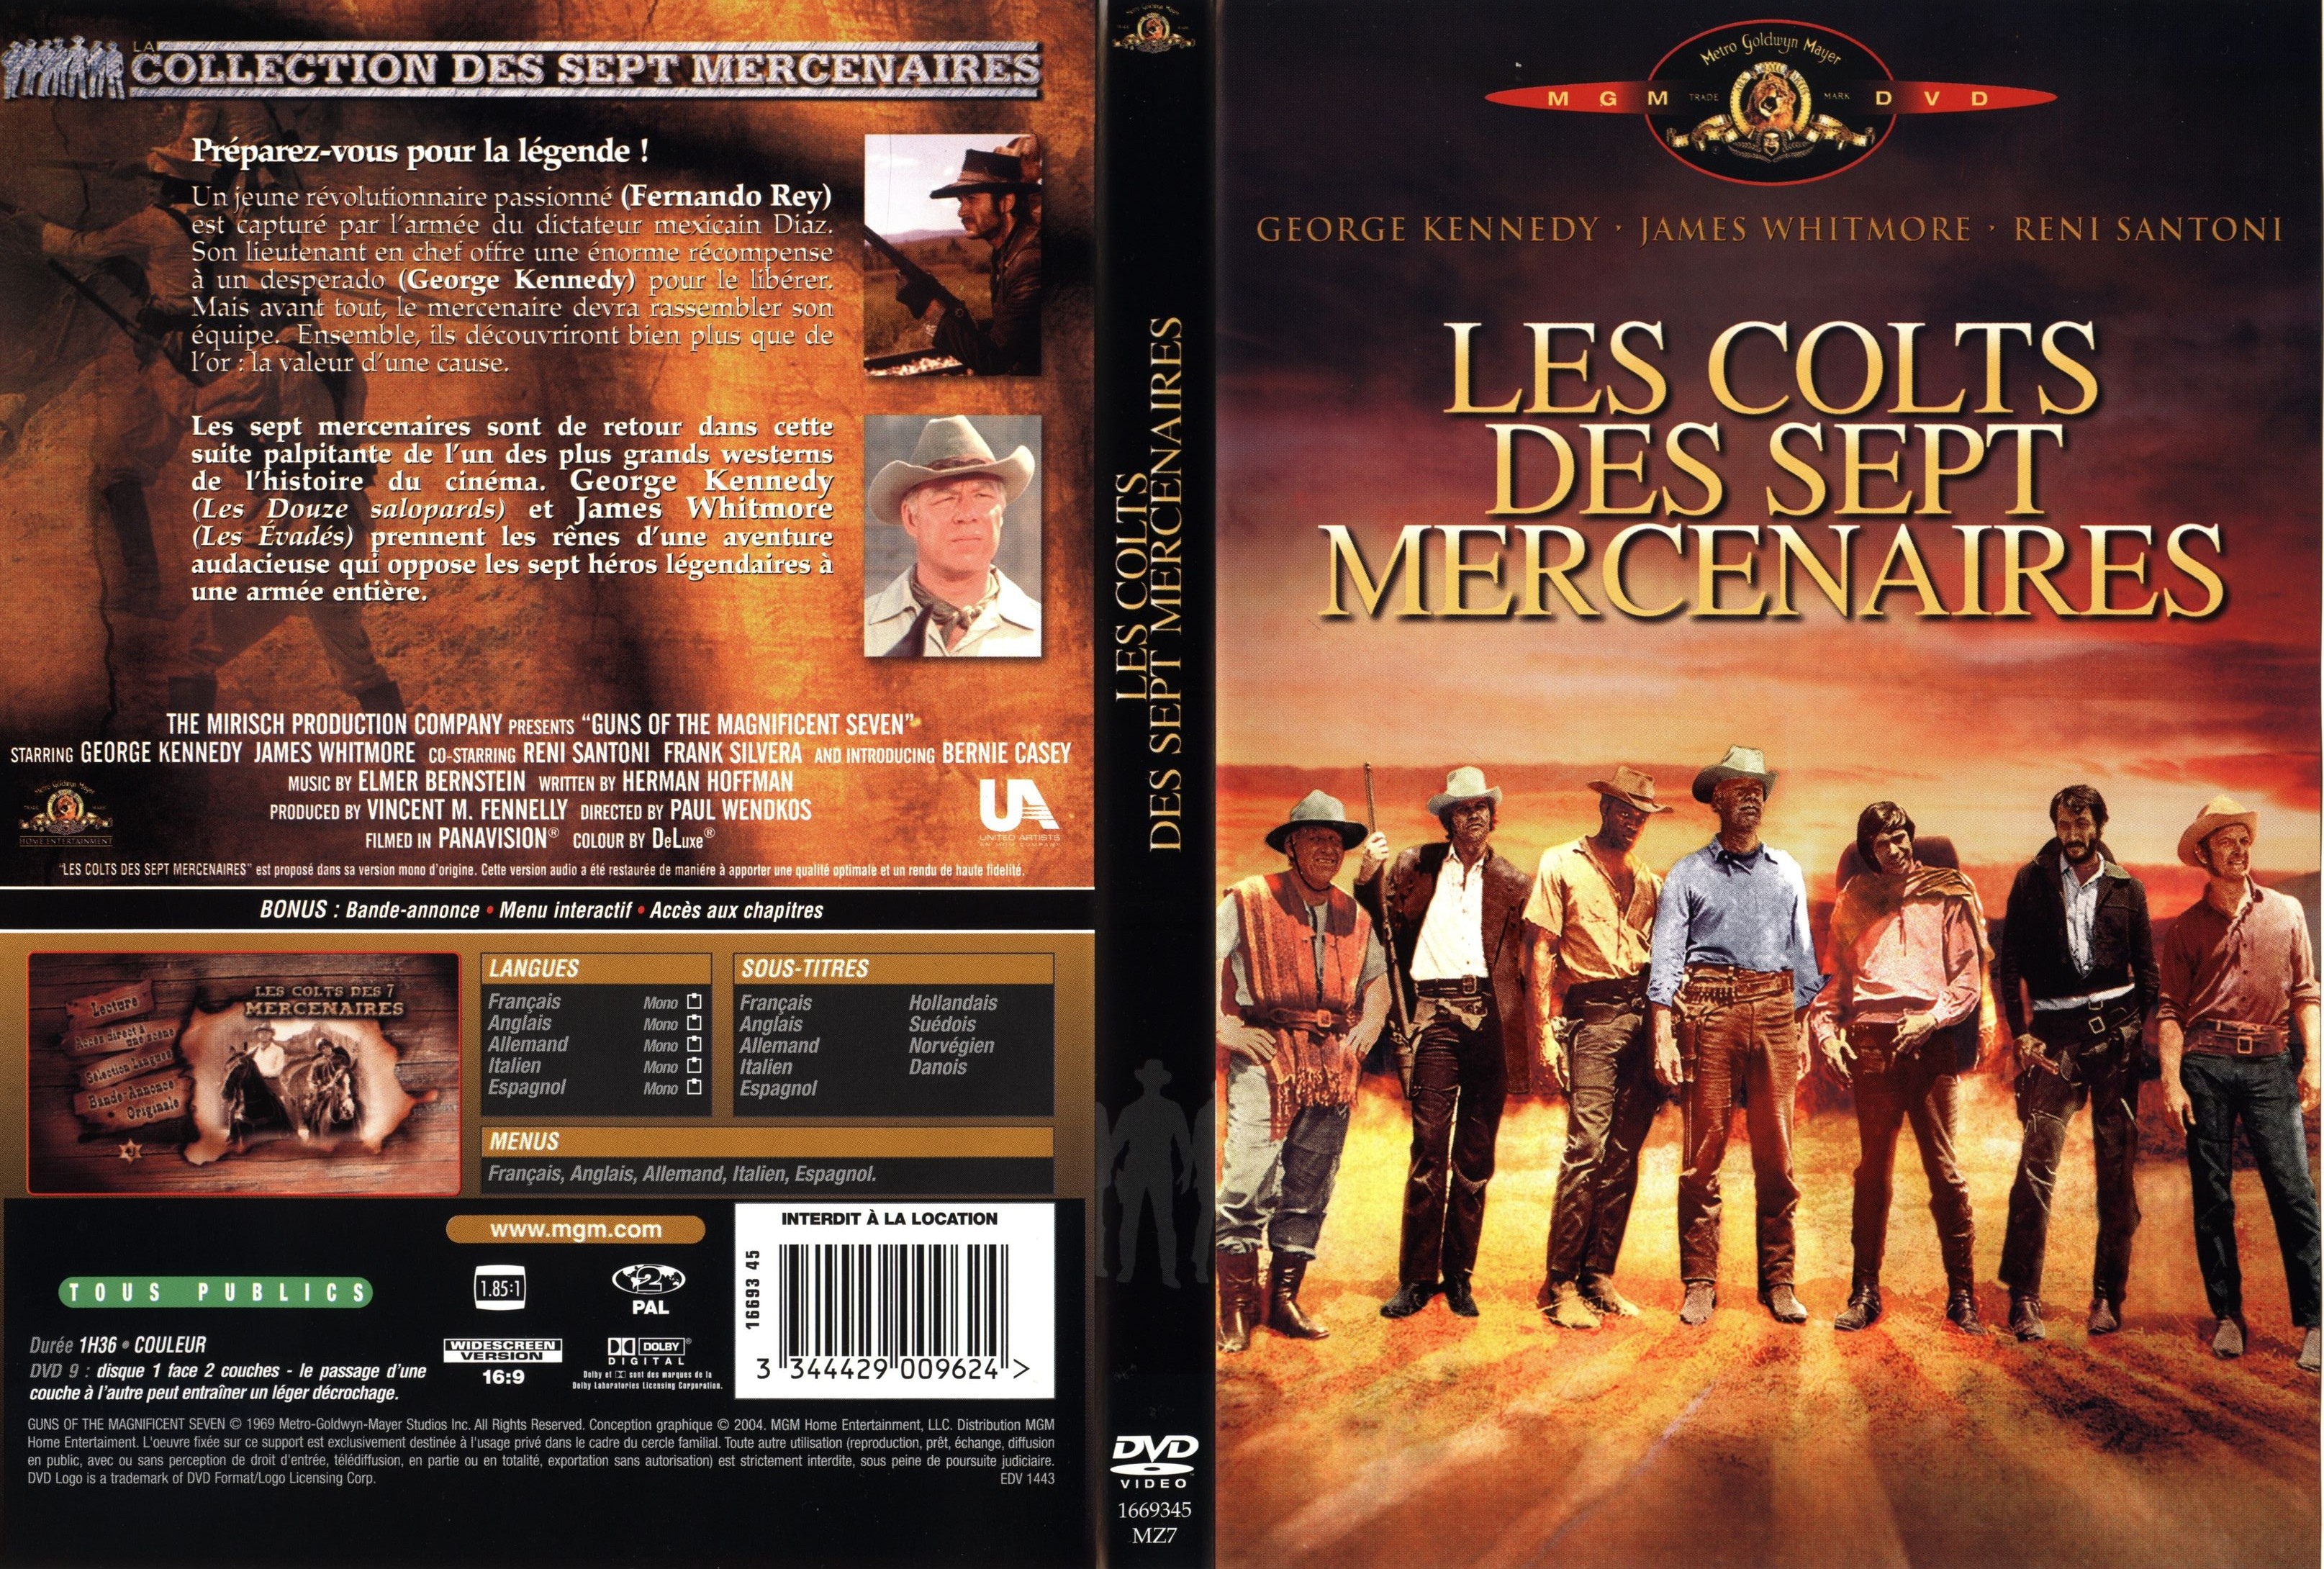 Jaquette DVD Les colts des sept mercenaires